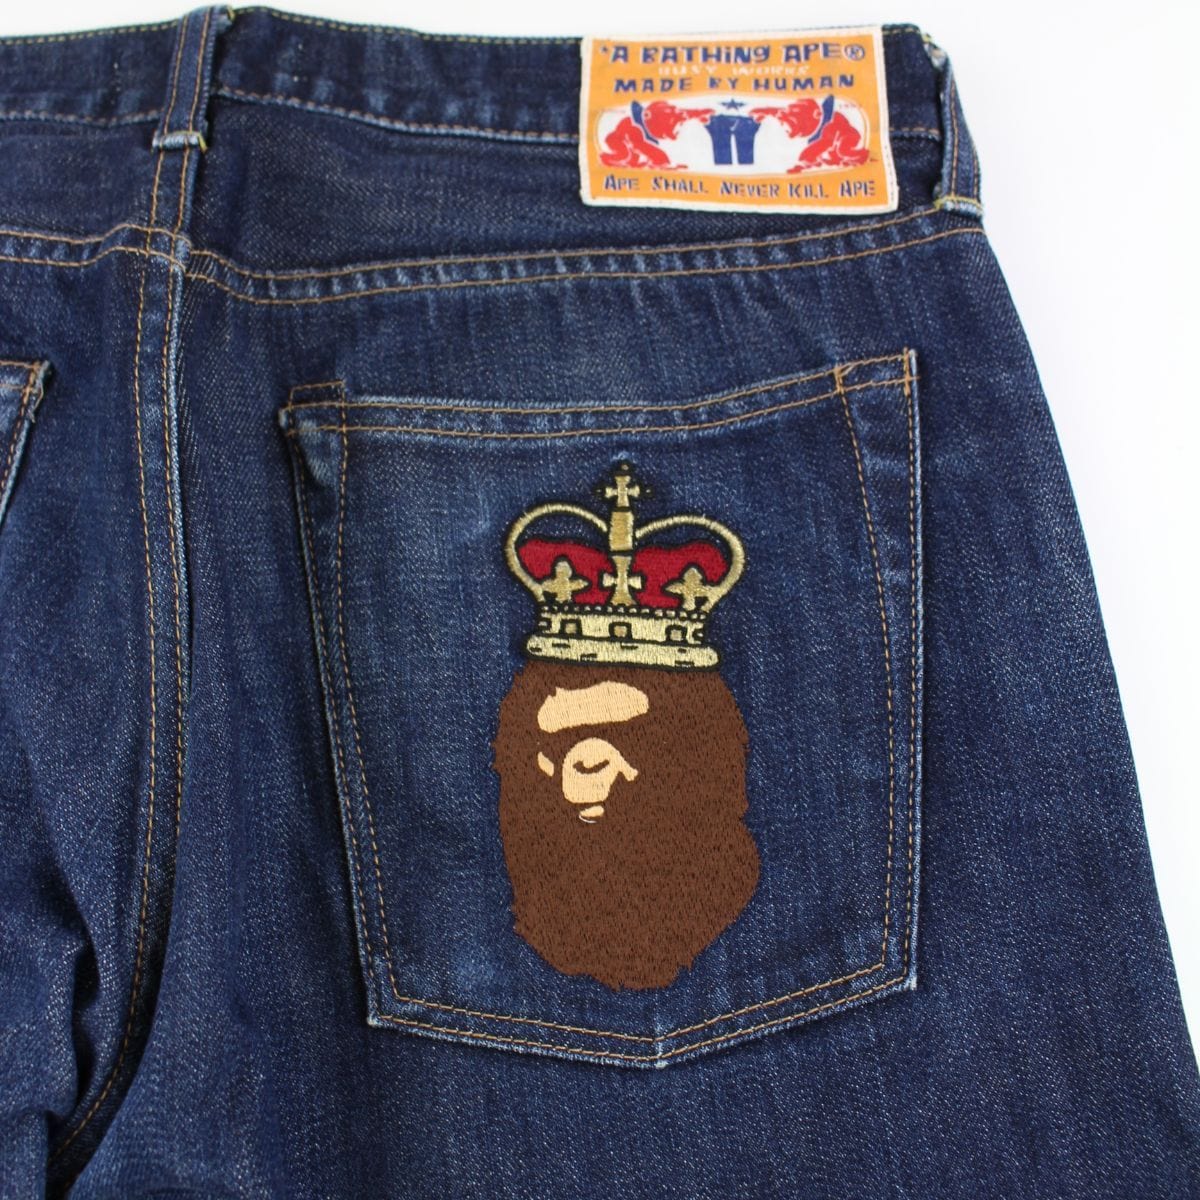 bape crown big ape logo denim jeans 1 - SaruGeneral